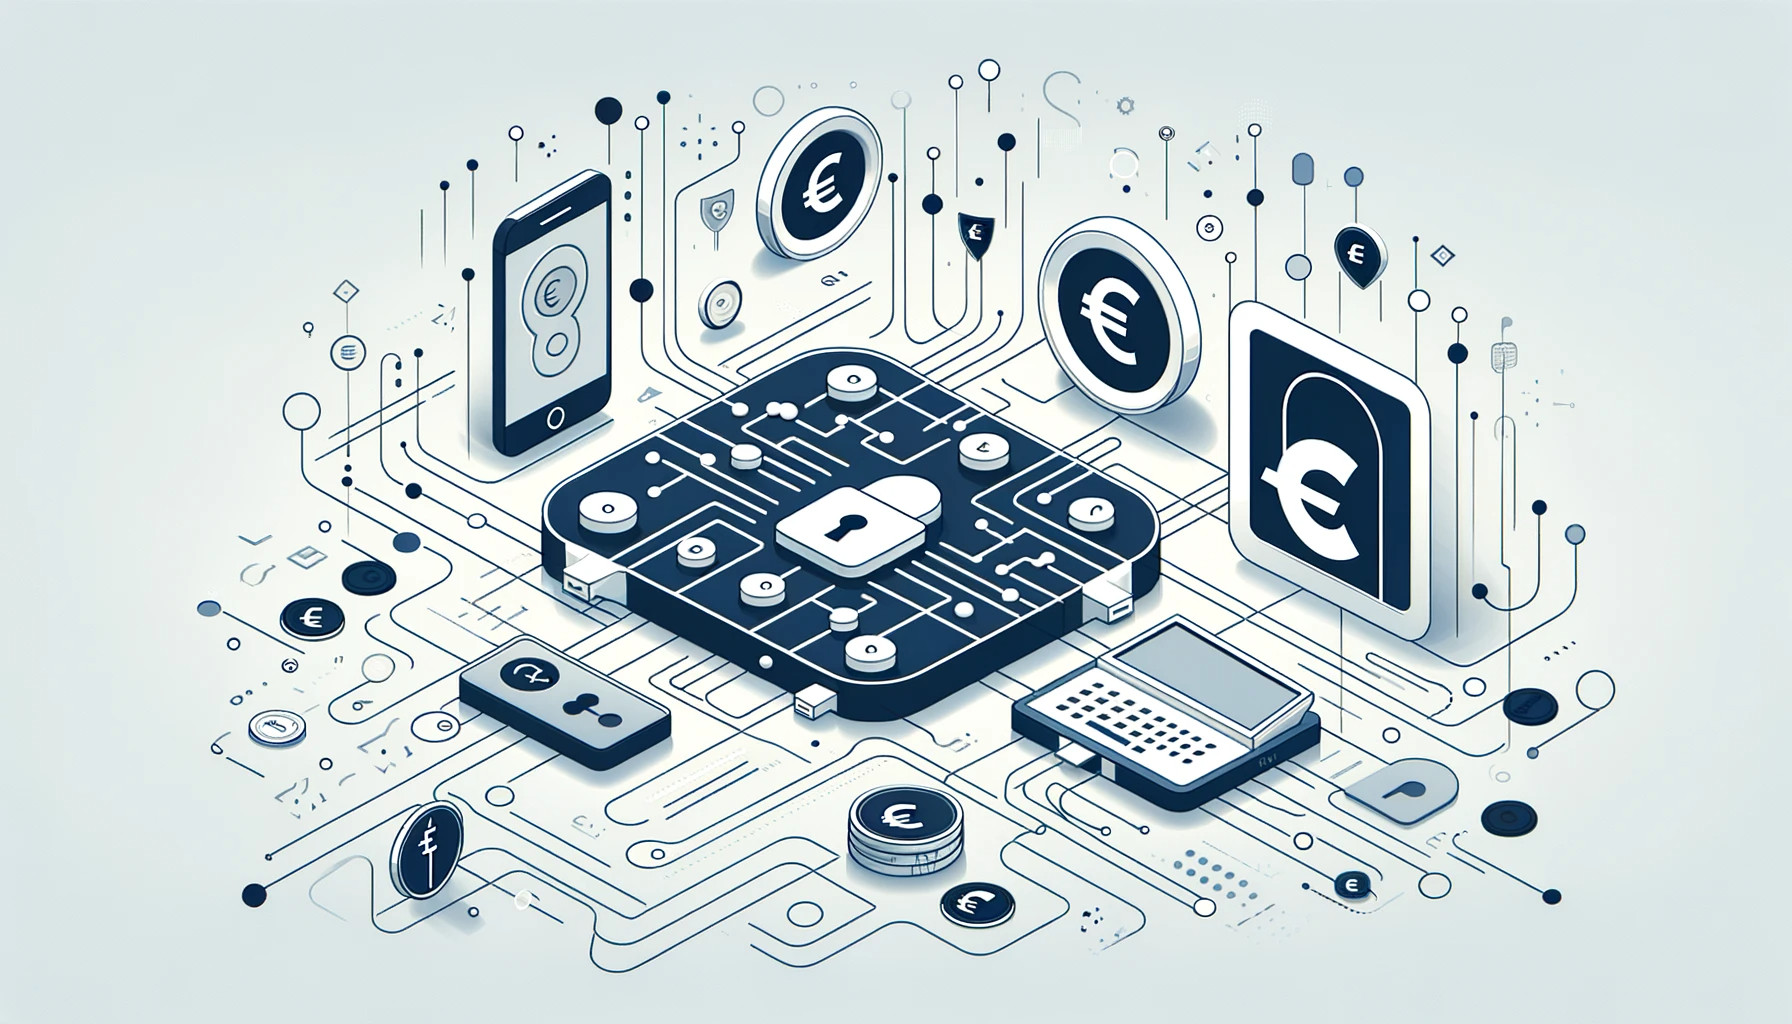 Minimalistisches, modernes Design, das sichere Banktechnologien darstellt, mit abstrakten Symbolen für sichere Programmierschnittstellen, digitalen Schlössern und verschlüsselten Datenströmen, subtil integrierten Euro-Symbolen, repräsentativ für Online-Banking im Euro-Raum.